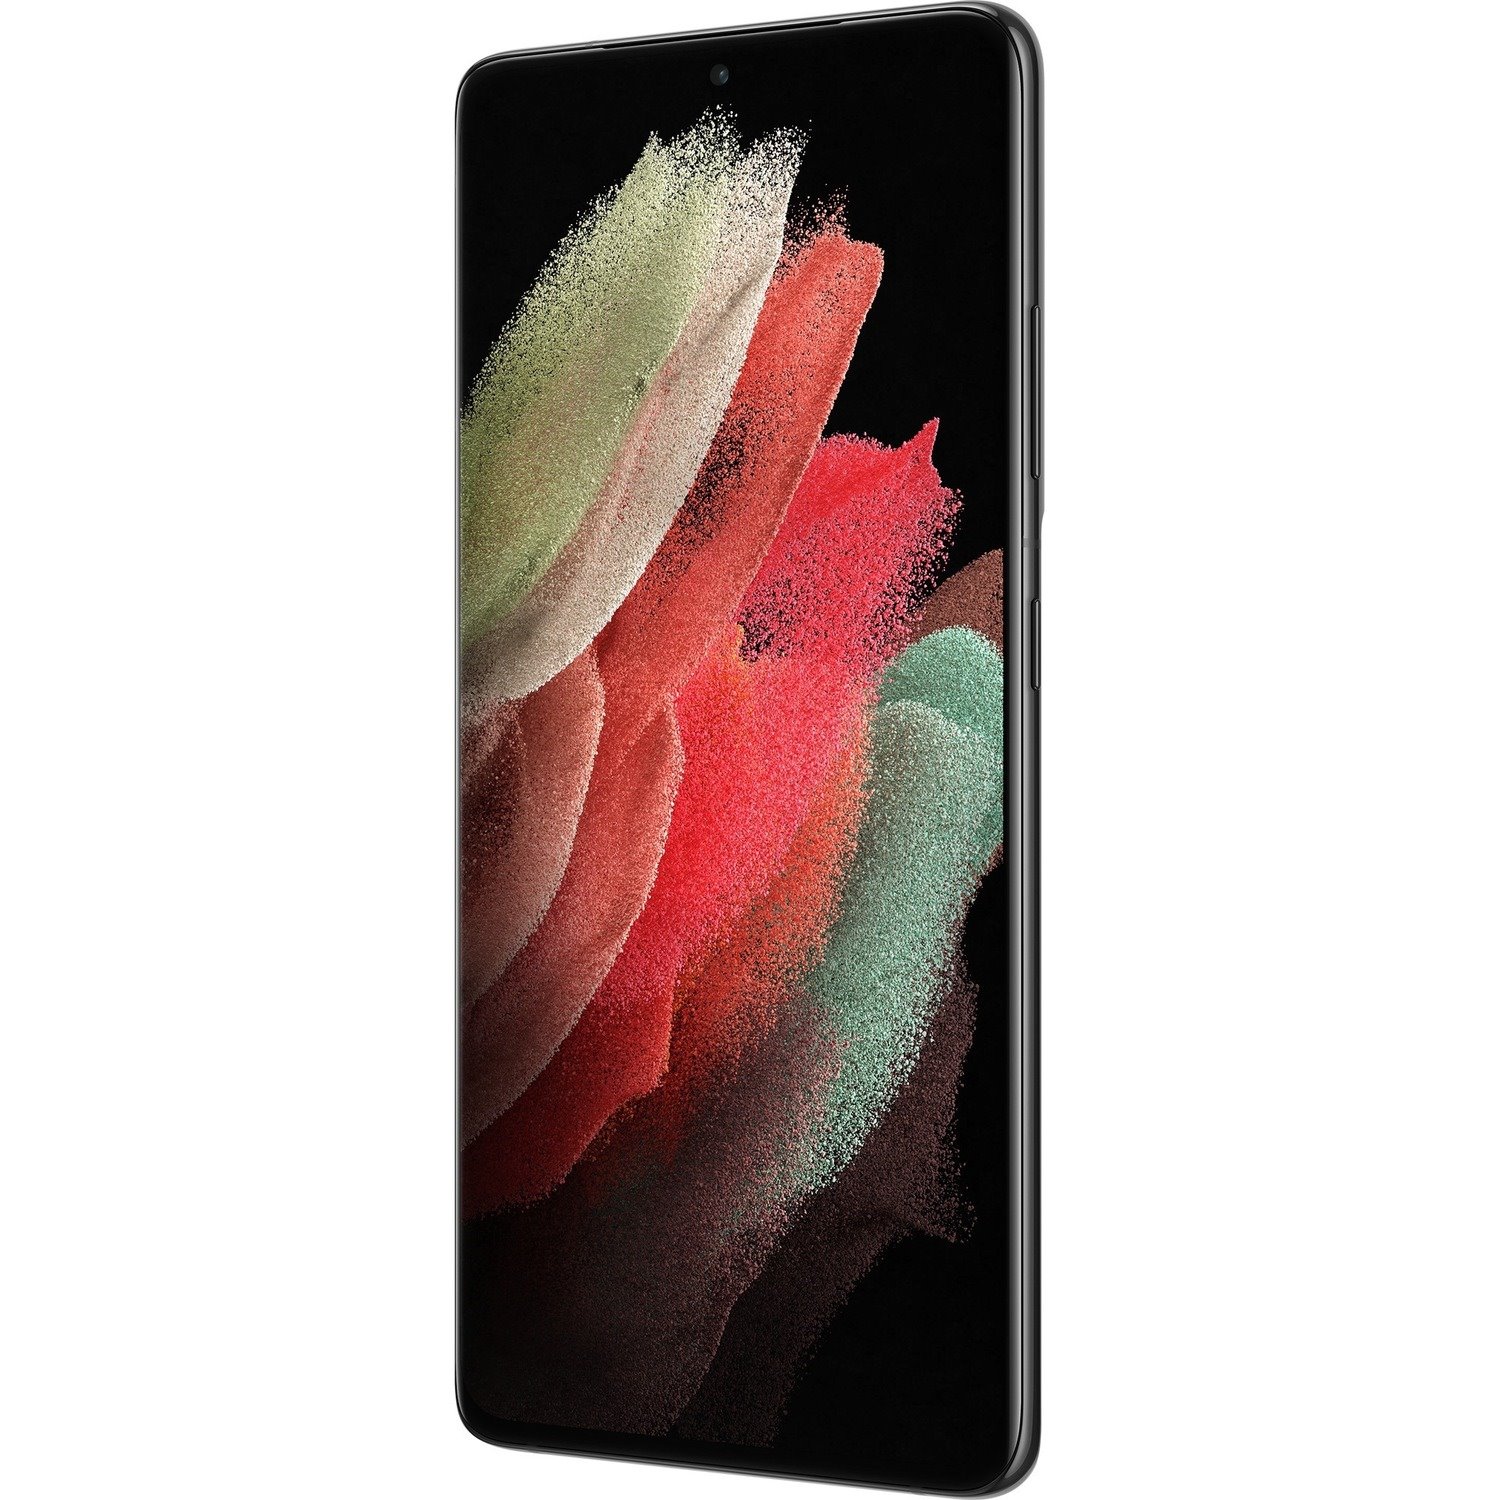 Samsung Samsung Galaxy S21 Ultra 5G SM-G998B 256 GB Smartphone - 17.3 cm (6.8") Dynamic AMOLED QHD+ 3200 x 1440 - Octa-core (Cortex X1Single-core (1 Core) 2.90 GHz + Cortex A78 Triple-core (3 Core) 2.80 GHz + Cortex A55 Quad-core (4 Core) 2.20 GHz) - 12 GB RAM - Android 11 - 5G - Phantom Black